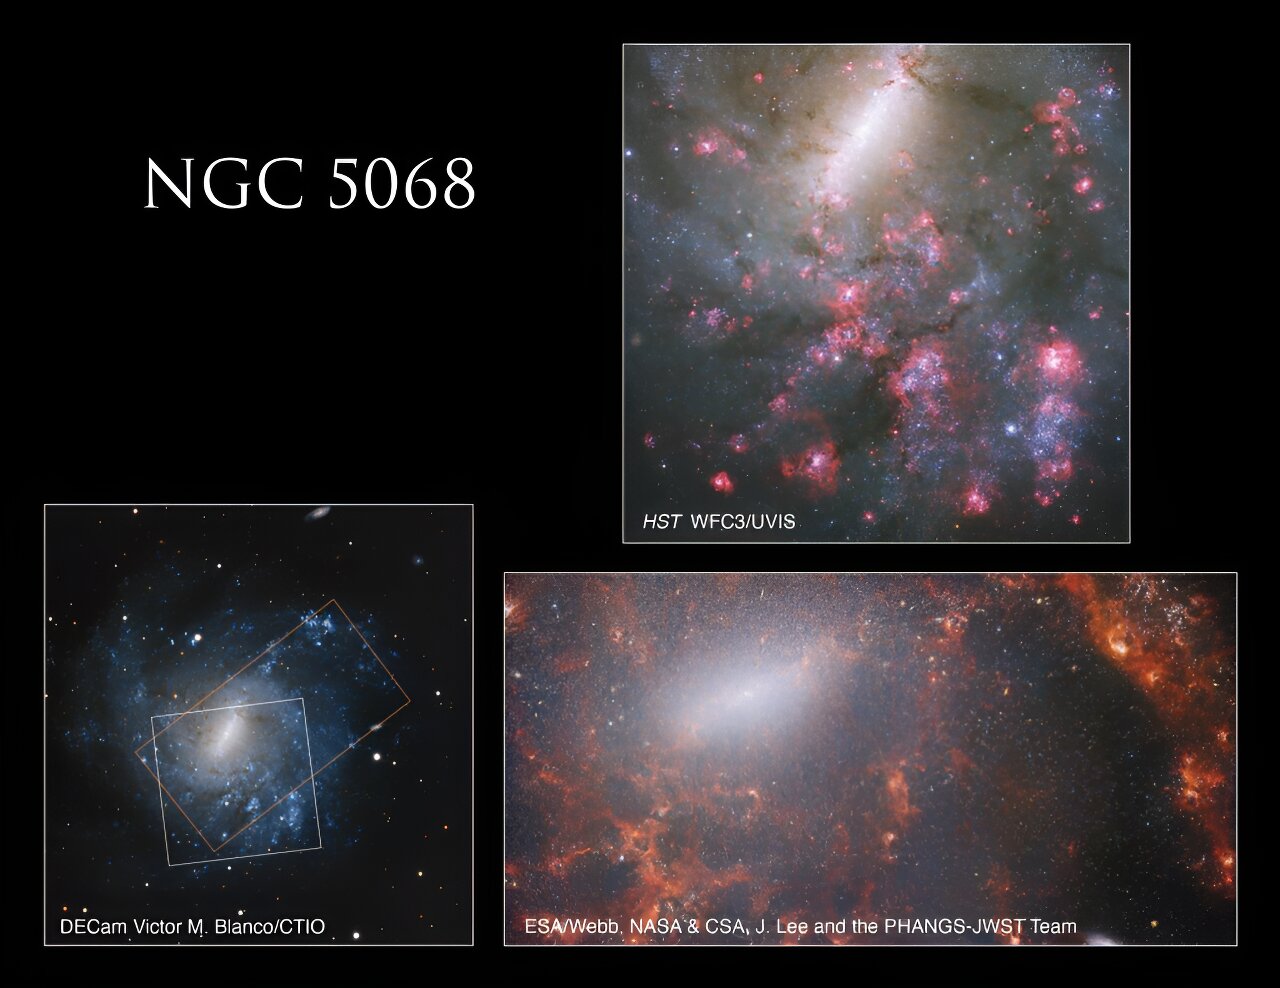 NASA-ina Hubble slika (u gornjem desnom kutu) kombinira ultraljubičaste, vidljive i blisko infracrvene svjetlosne spektre. Za usporedbu, Webbova slika (u donjem desnom kutu) fokusirana je na infracrvenom spektru. Proširena slika galaksije NGC 5068 (dolje lijevo) ističe položaje obiju slika - Hubbleove i Webbove - unutar cjelokupne galaksije, čime se pojašnjava njihova međusobna povezanost. Zasluge za slike pripadaju NASA-i, ESA-i, R. Chandaru s Sveučilišta u Toledu i J. Leeju iz STScI-a. Obrada slike je djelo Gladys Kober (NASA/Katoličko sveučilište Amerike), uz suradnju DECam, Victor M. Blanco/CTIO, CSA, J. Lee i tima PHANGS-JWST.